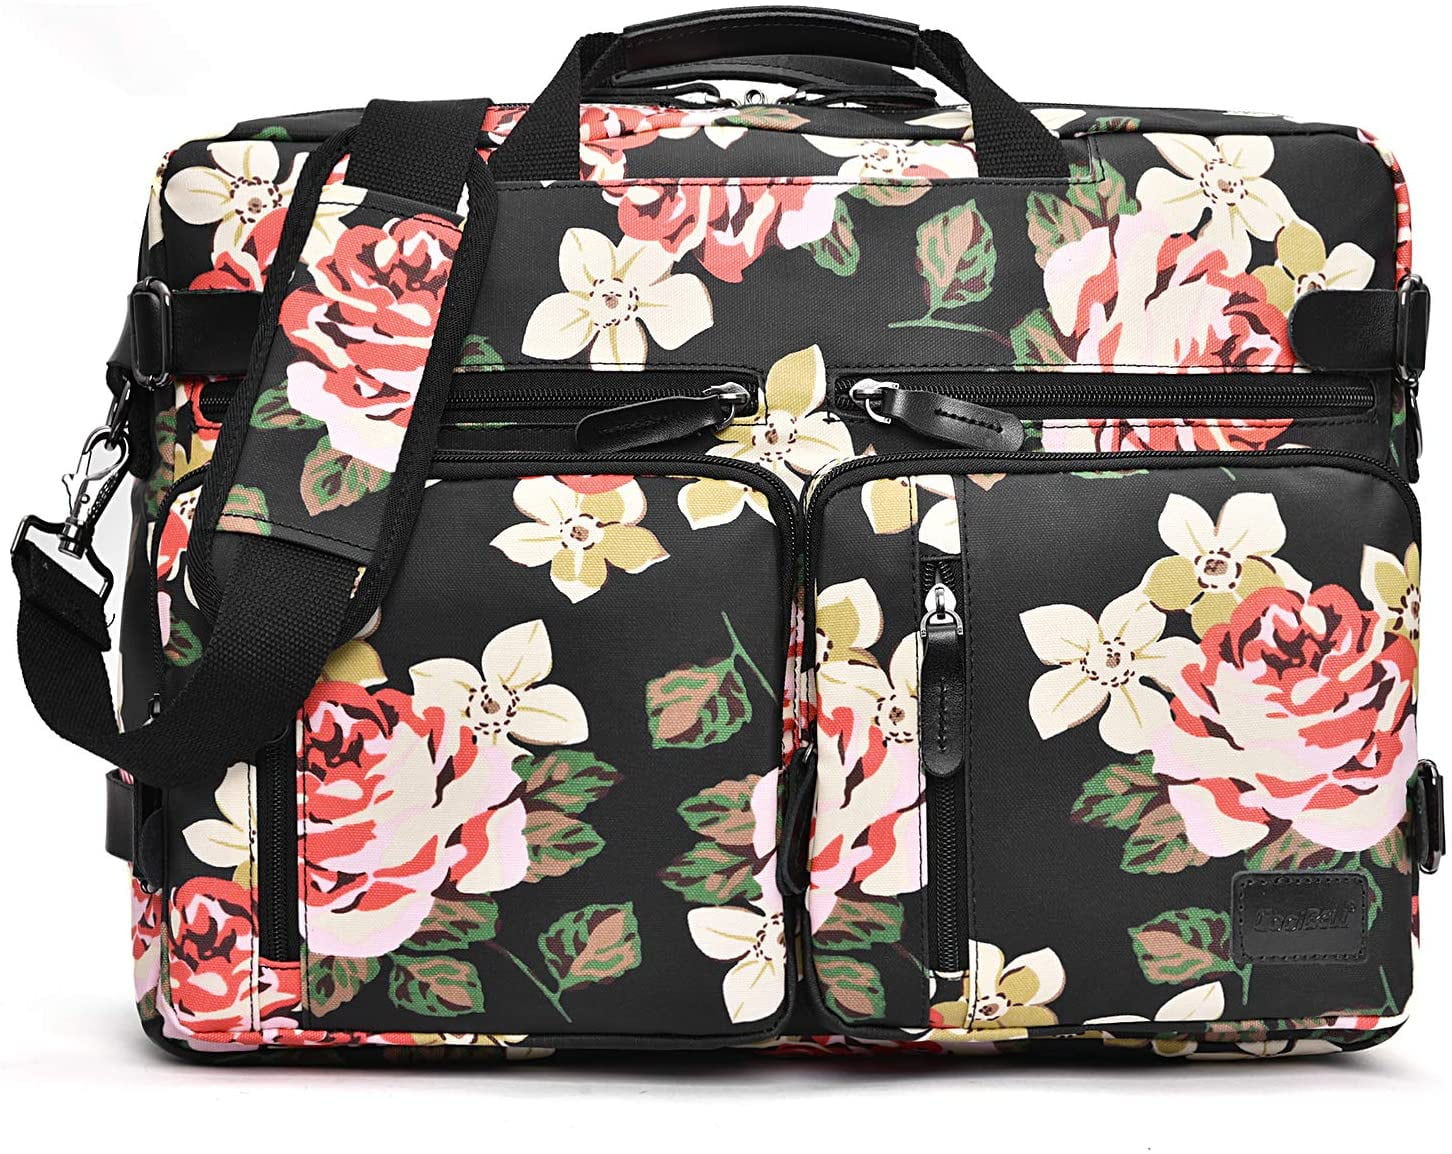 CoolBELL Convertible Backpack Messenger Bag Shoulder Bag Laptop Case Handbag Business Briefcase Multi-Functional Travel Rucksack Fits 17.3 Inch Laptop for Men/Women Canvas Dark Grey 